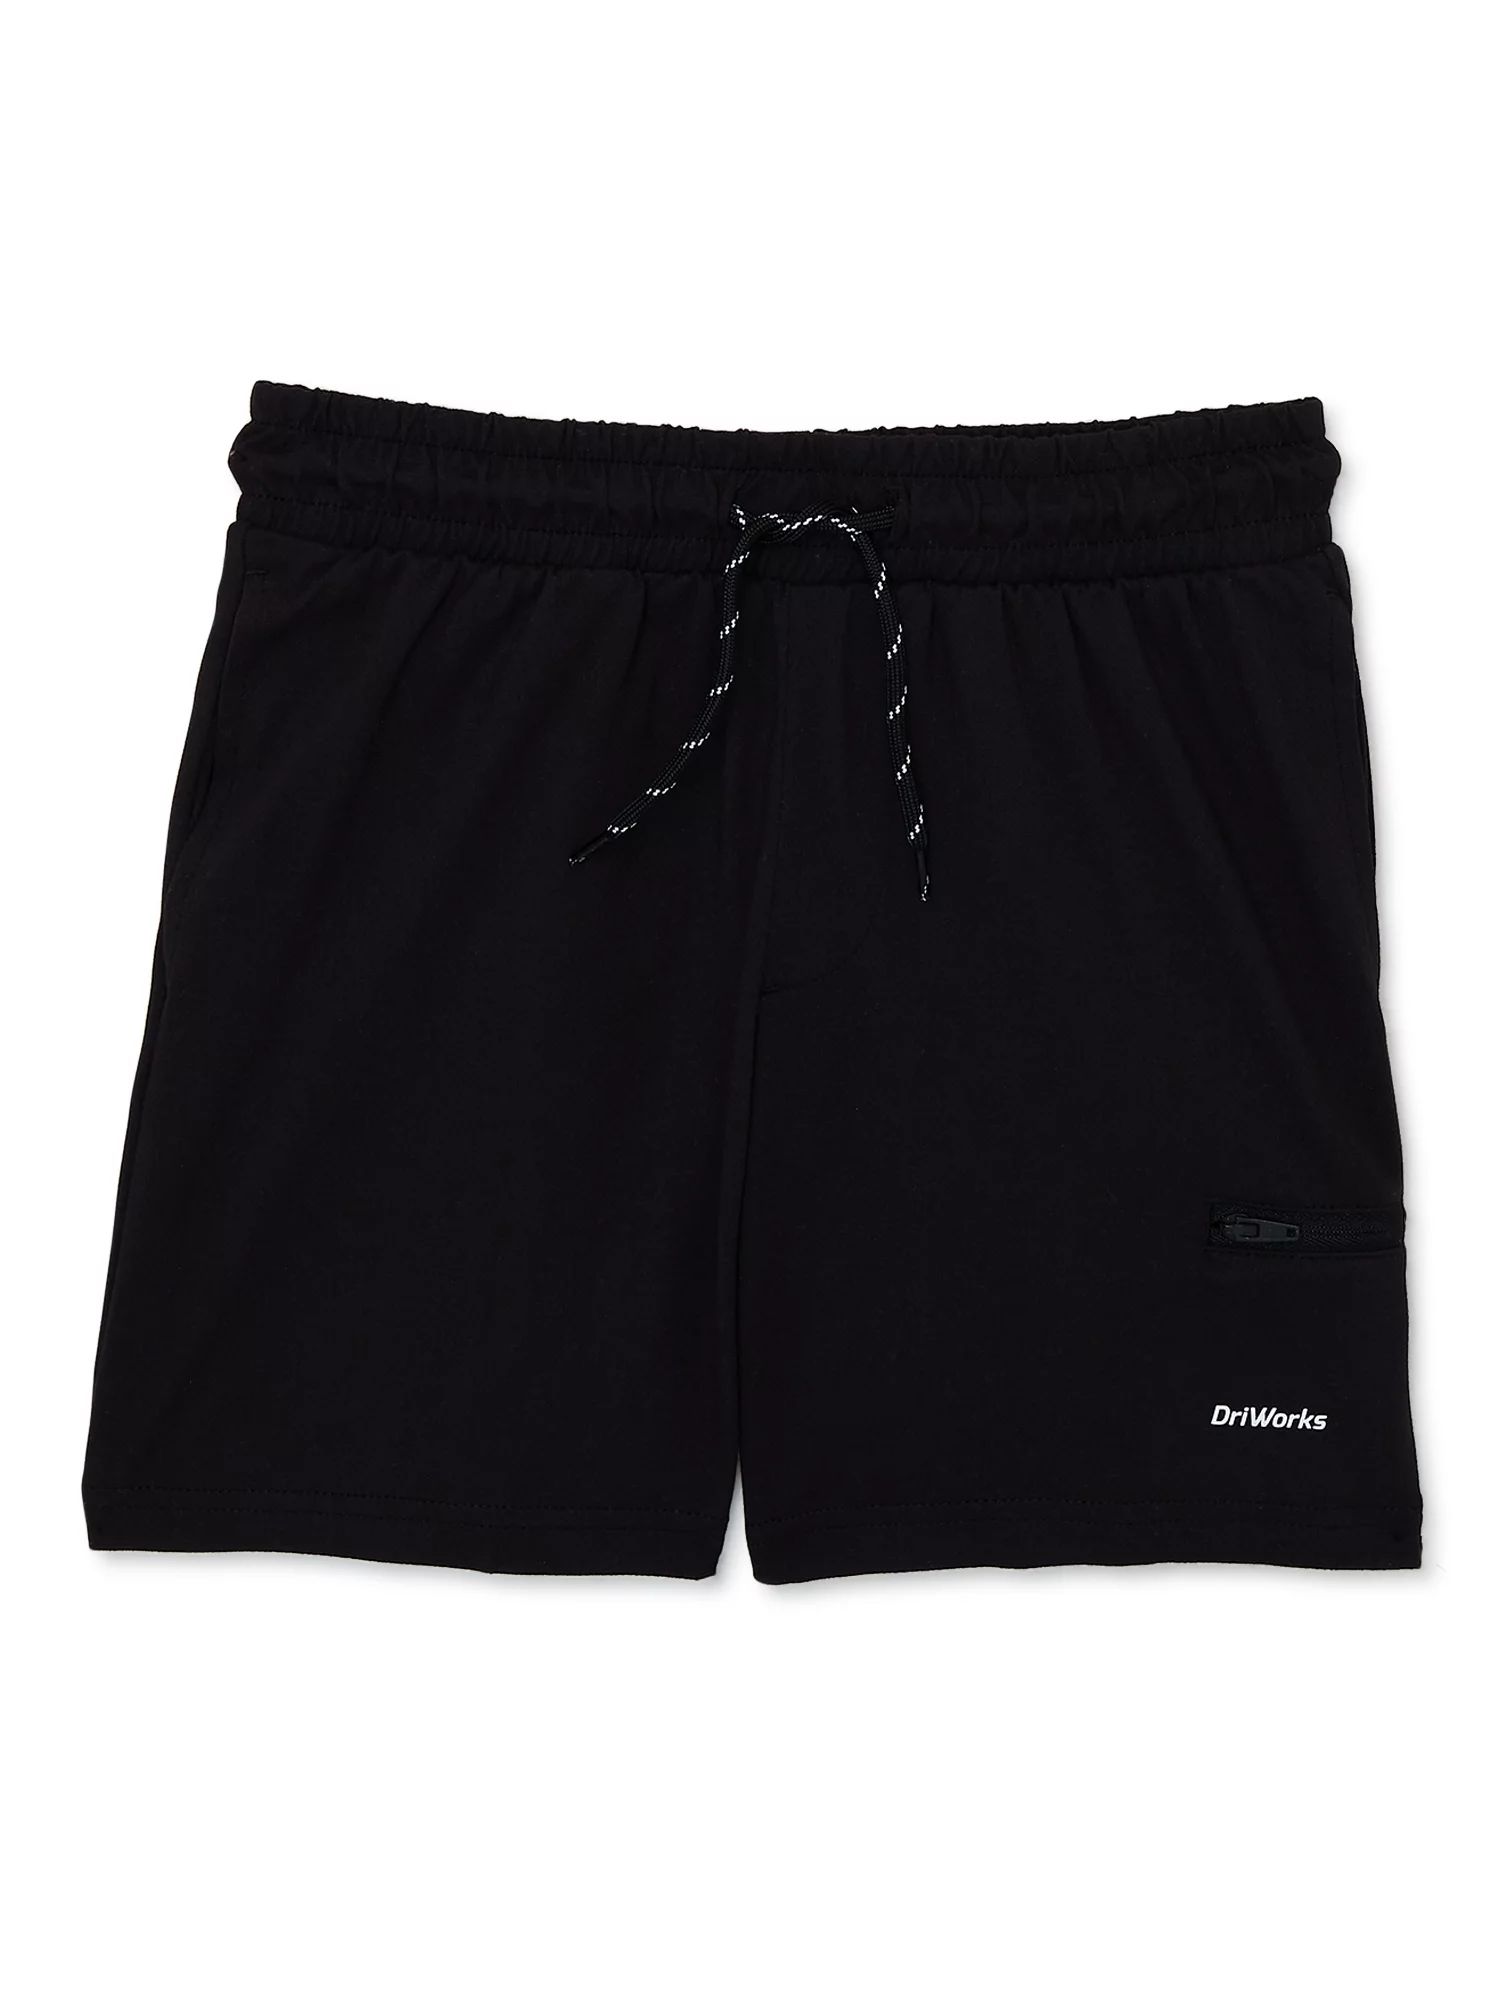 Athletic Works Boys Active Shorts, Sizes 4-18 & Husky | Walmart (US)